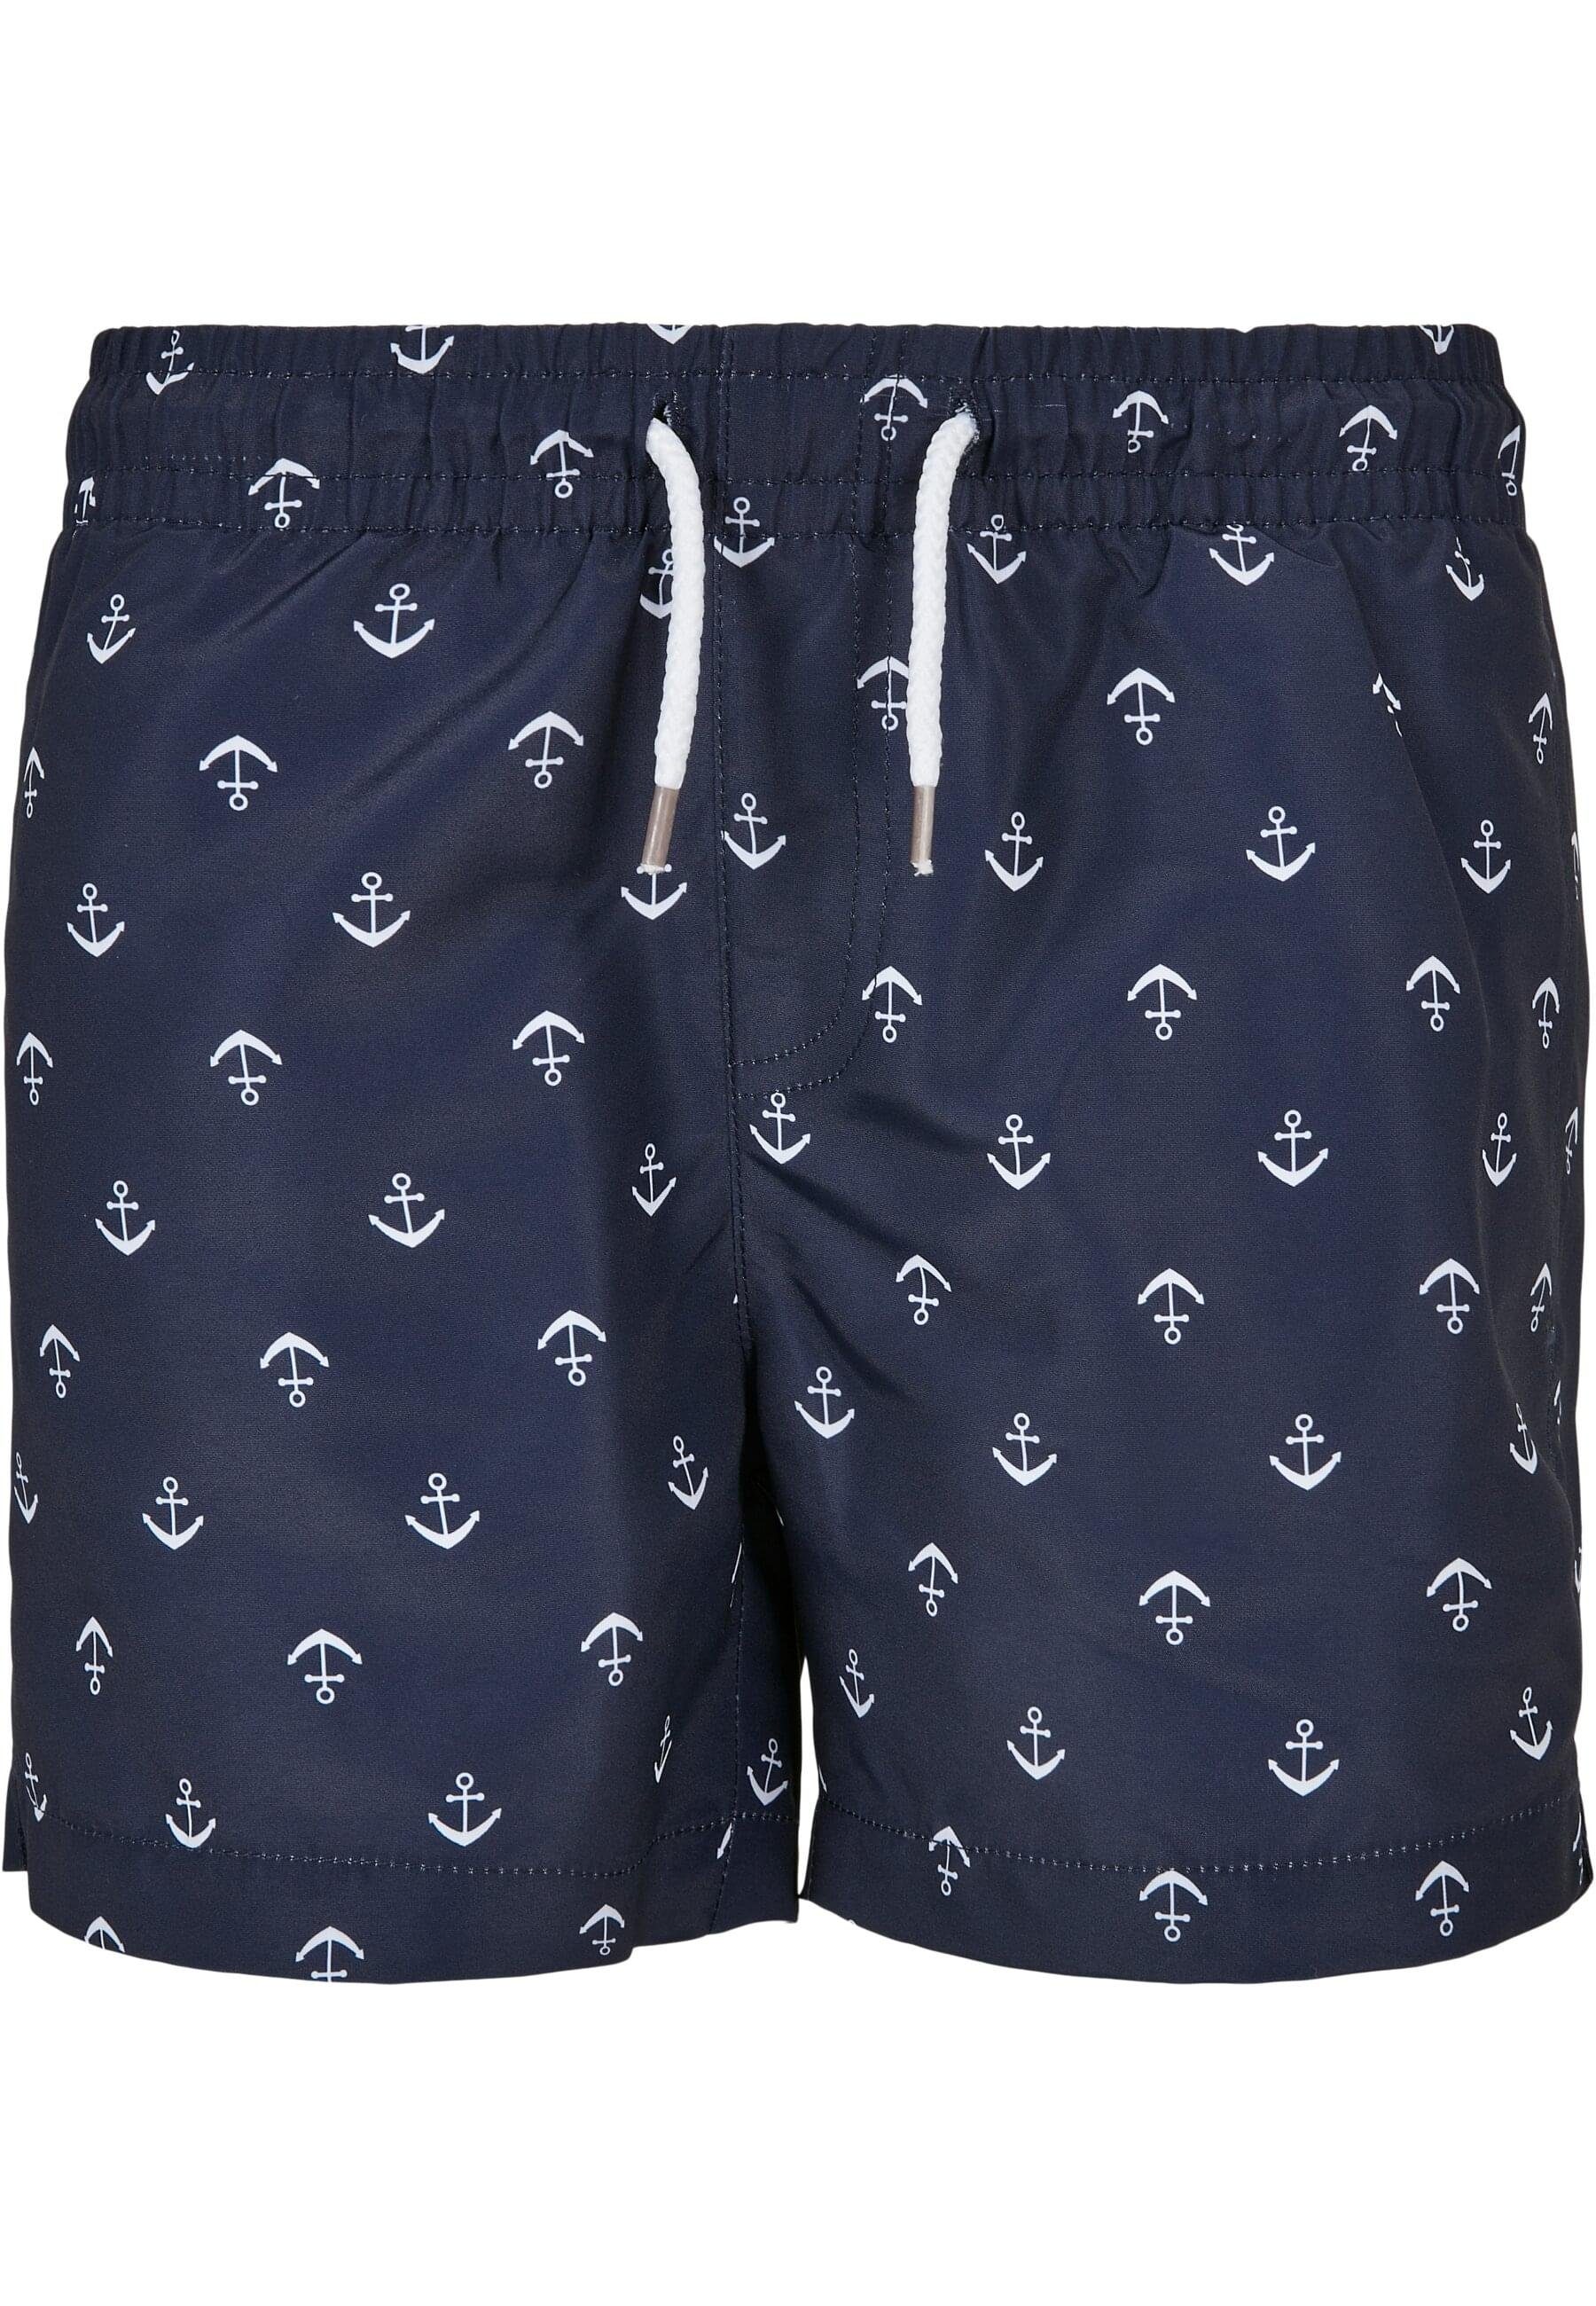 URBAN CLASSICS Badeshorts Herren Boys Swim Shorts Pattern anchor/navy